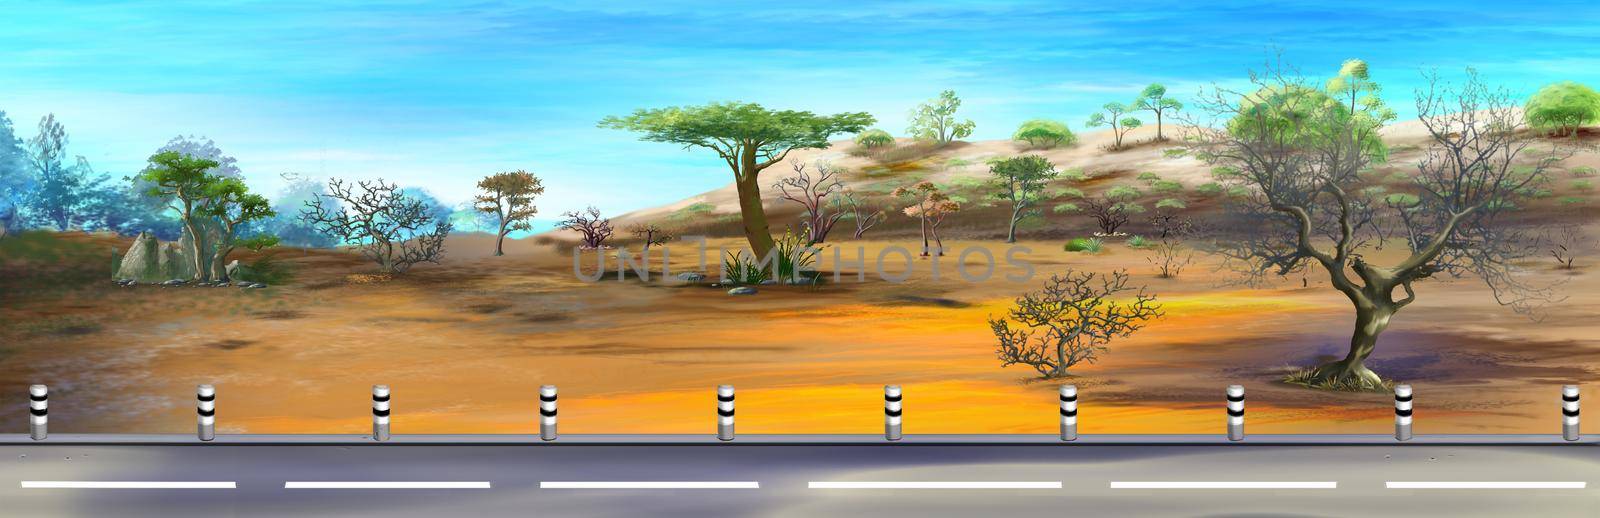 Asphalt highway in the savannah by Multipedia